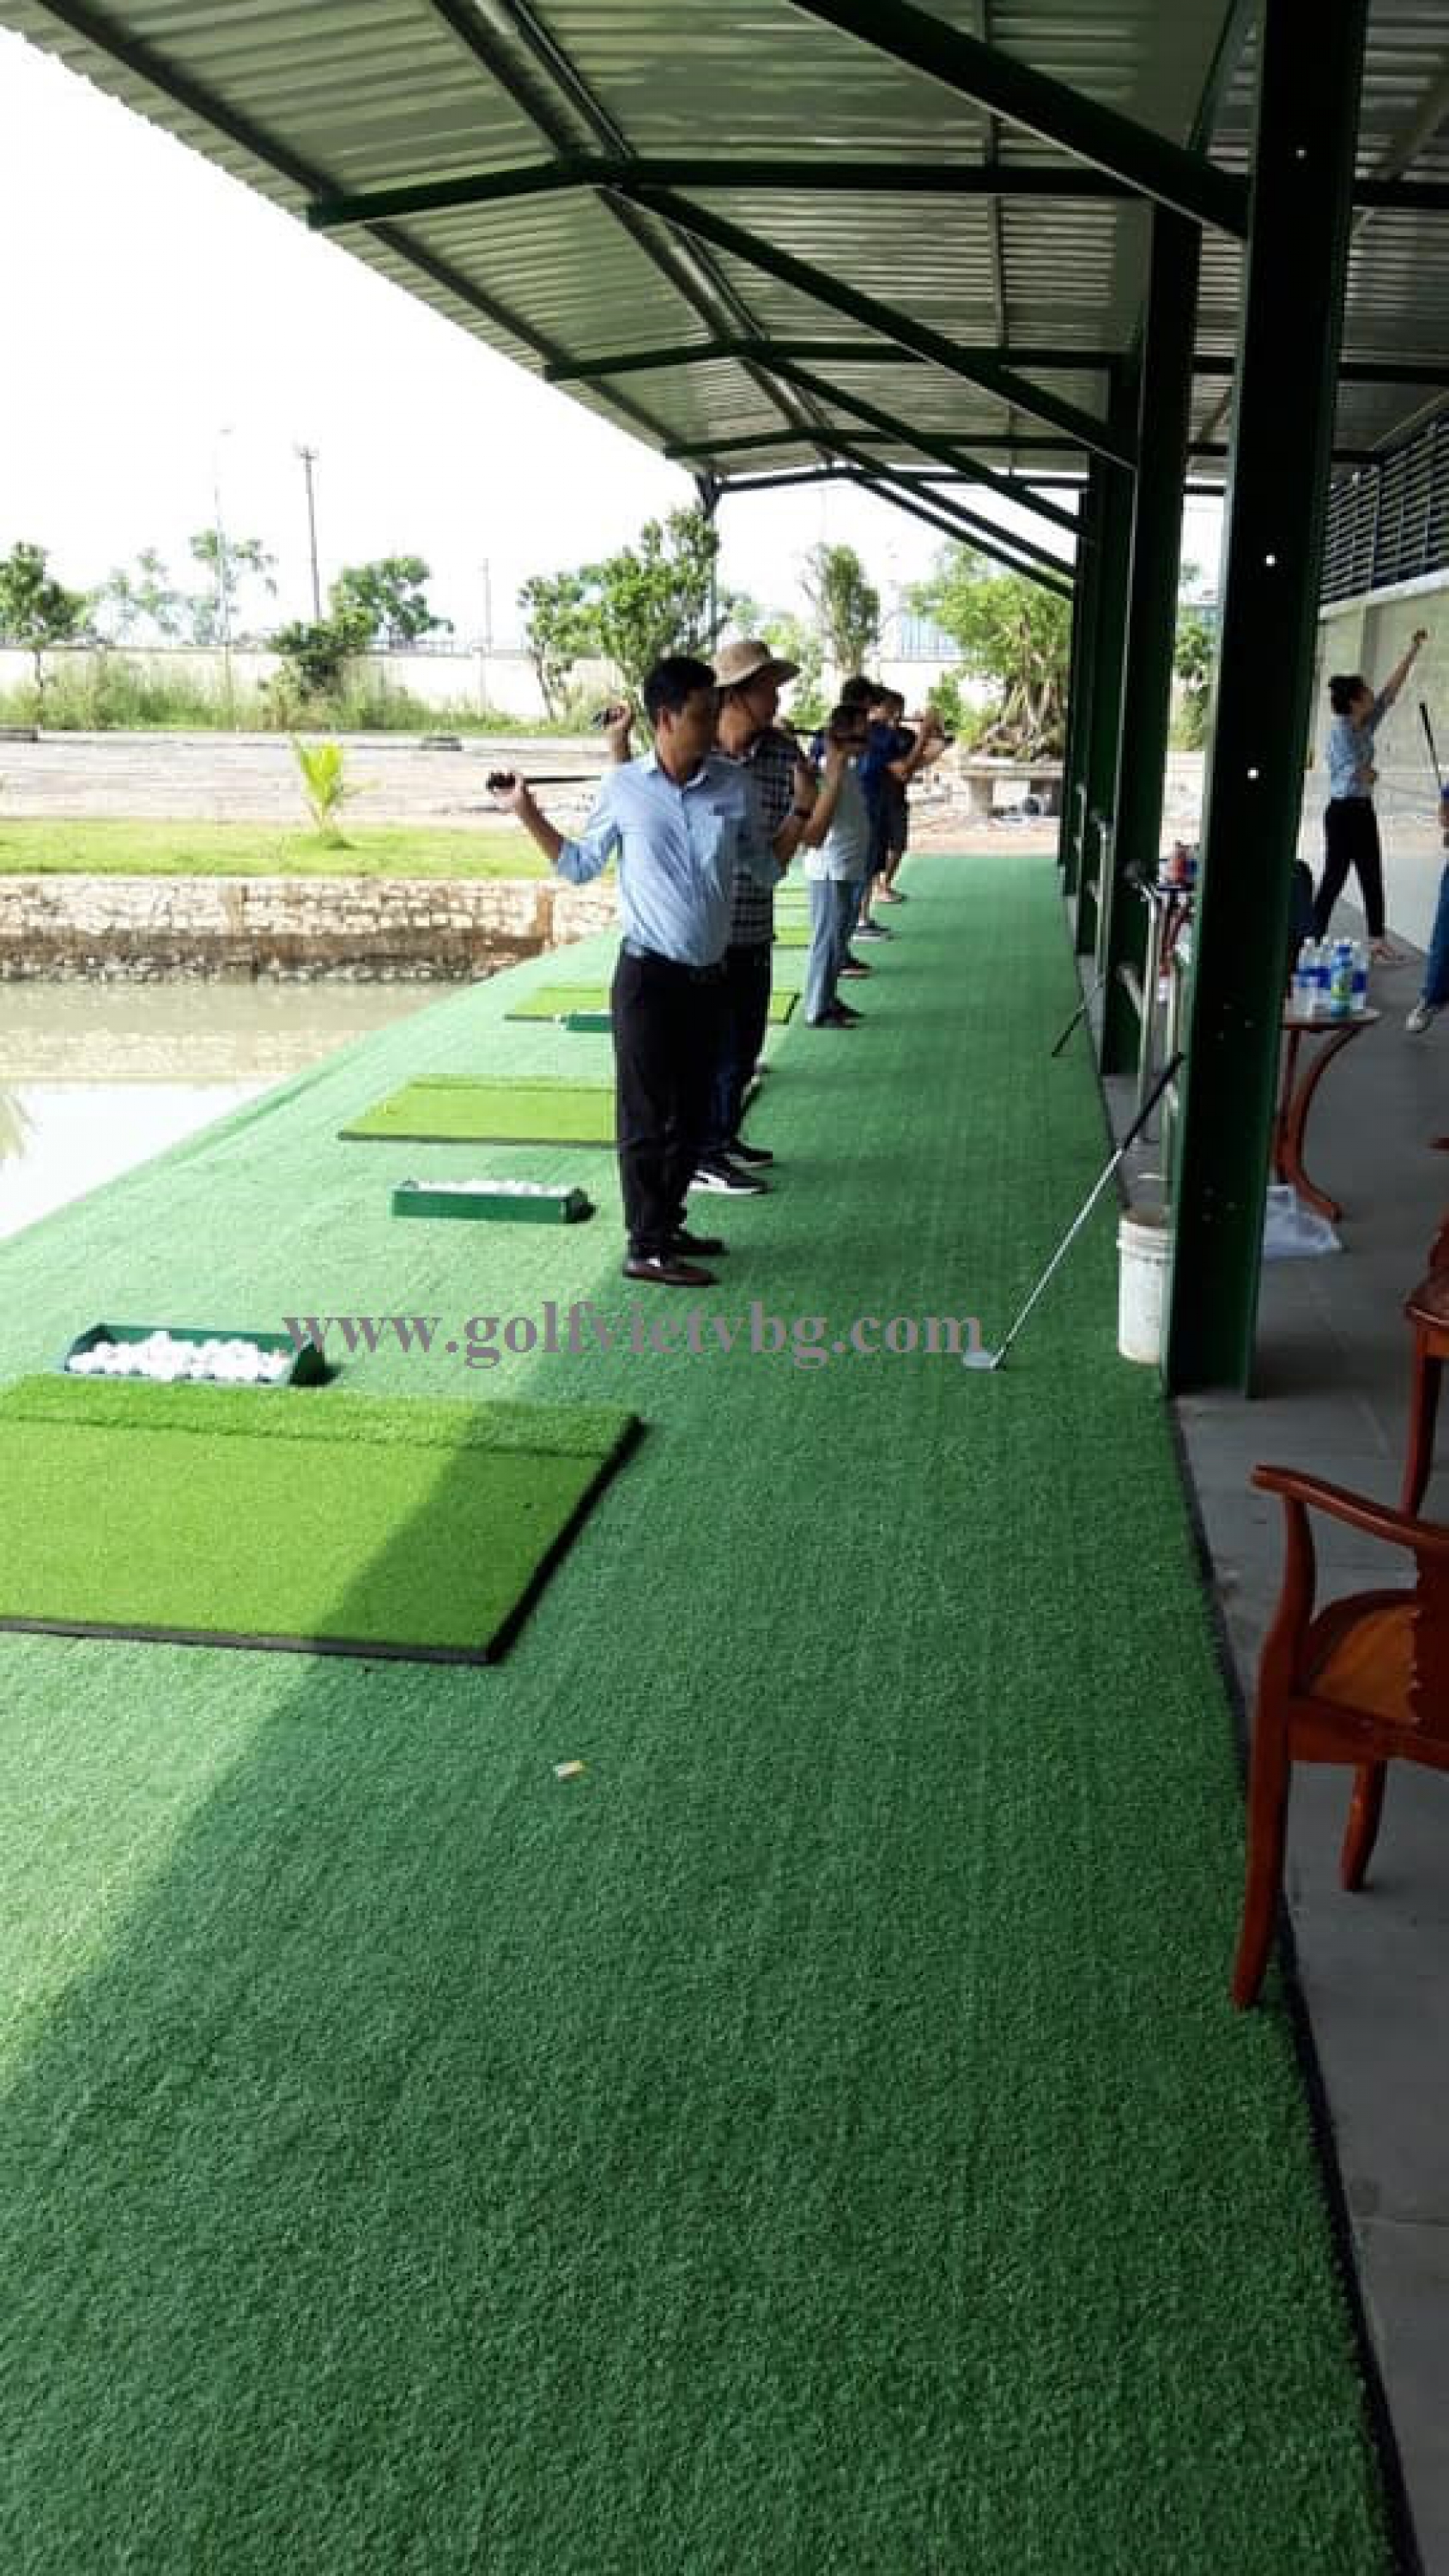 Cung cấp thi công sân tập golf tại SG